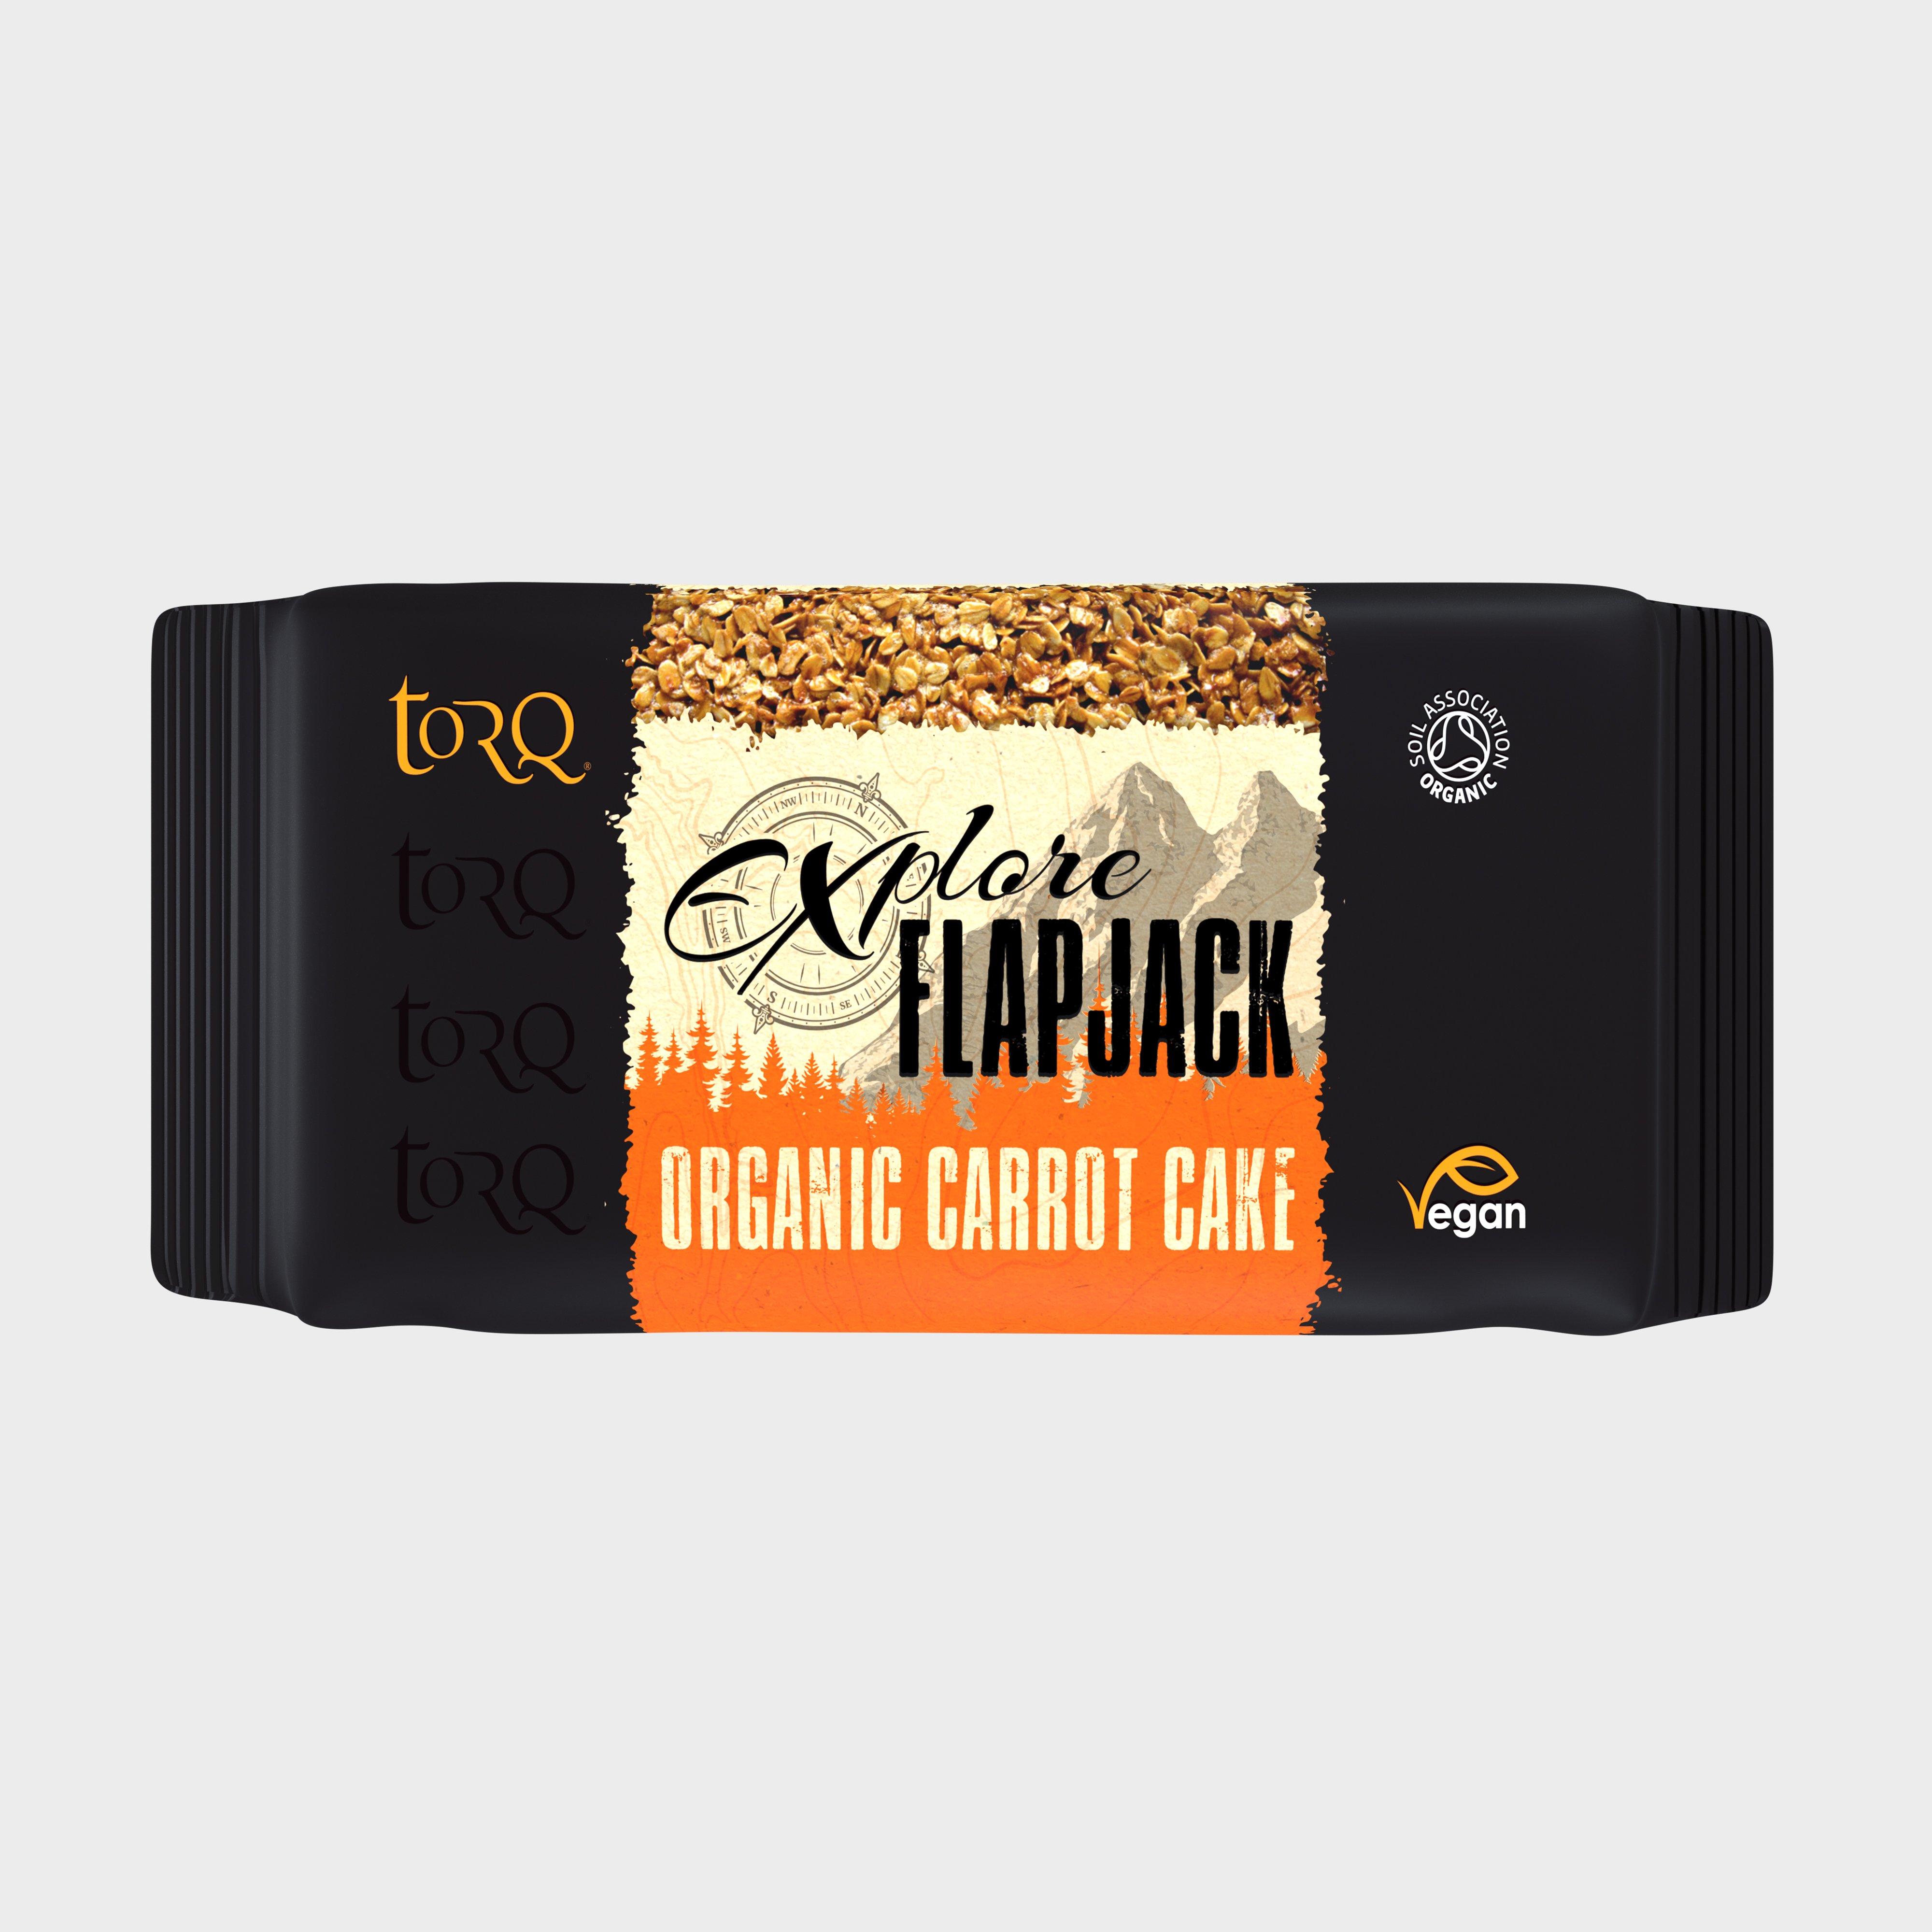 Torq Explore Flapjack Apple Strudel - Black/carrot  Black/carrot